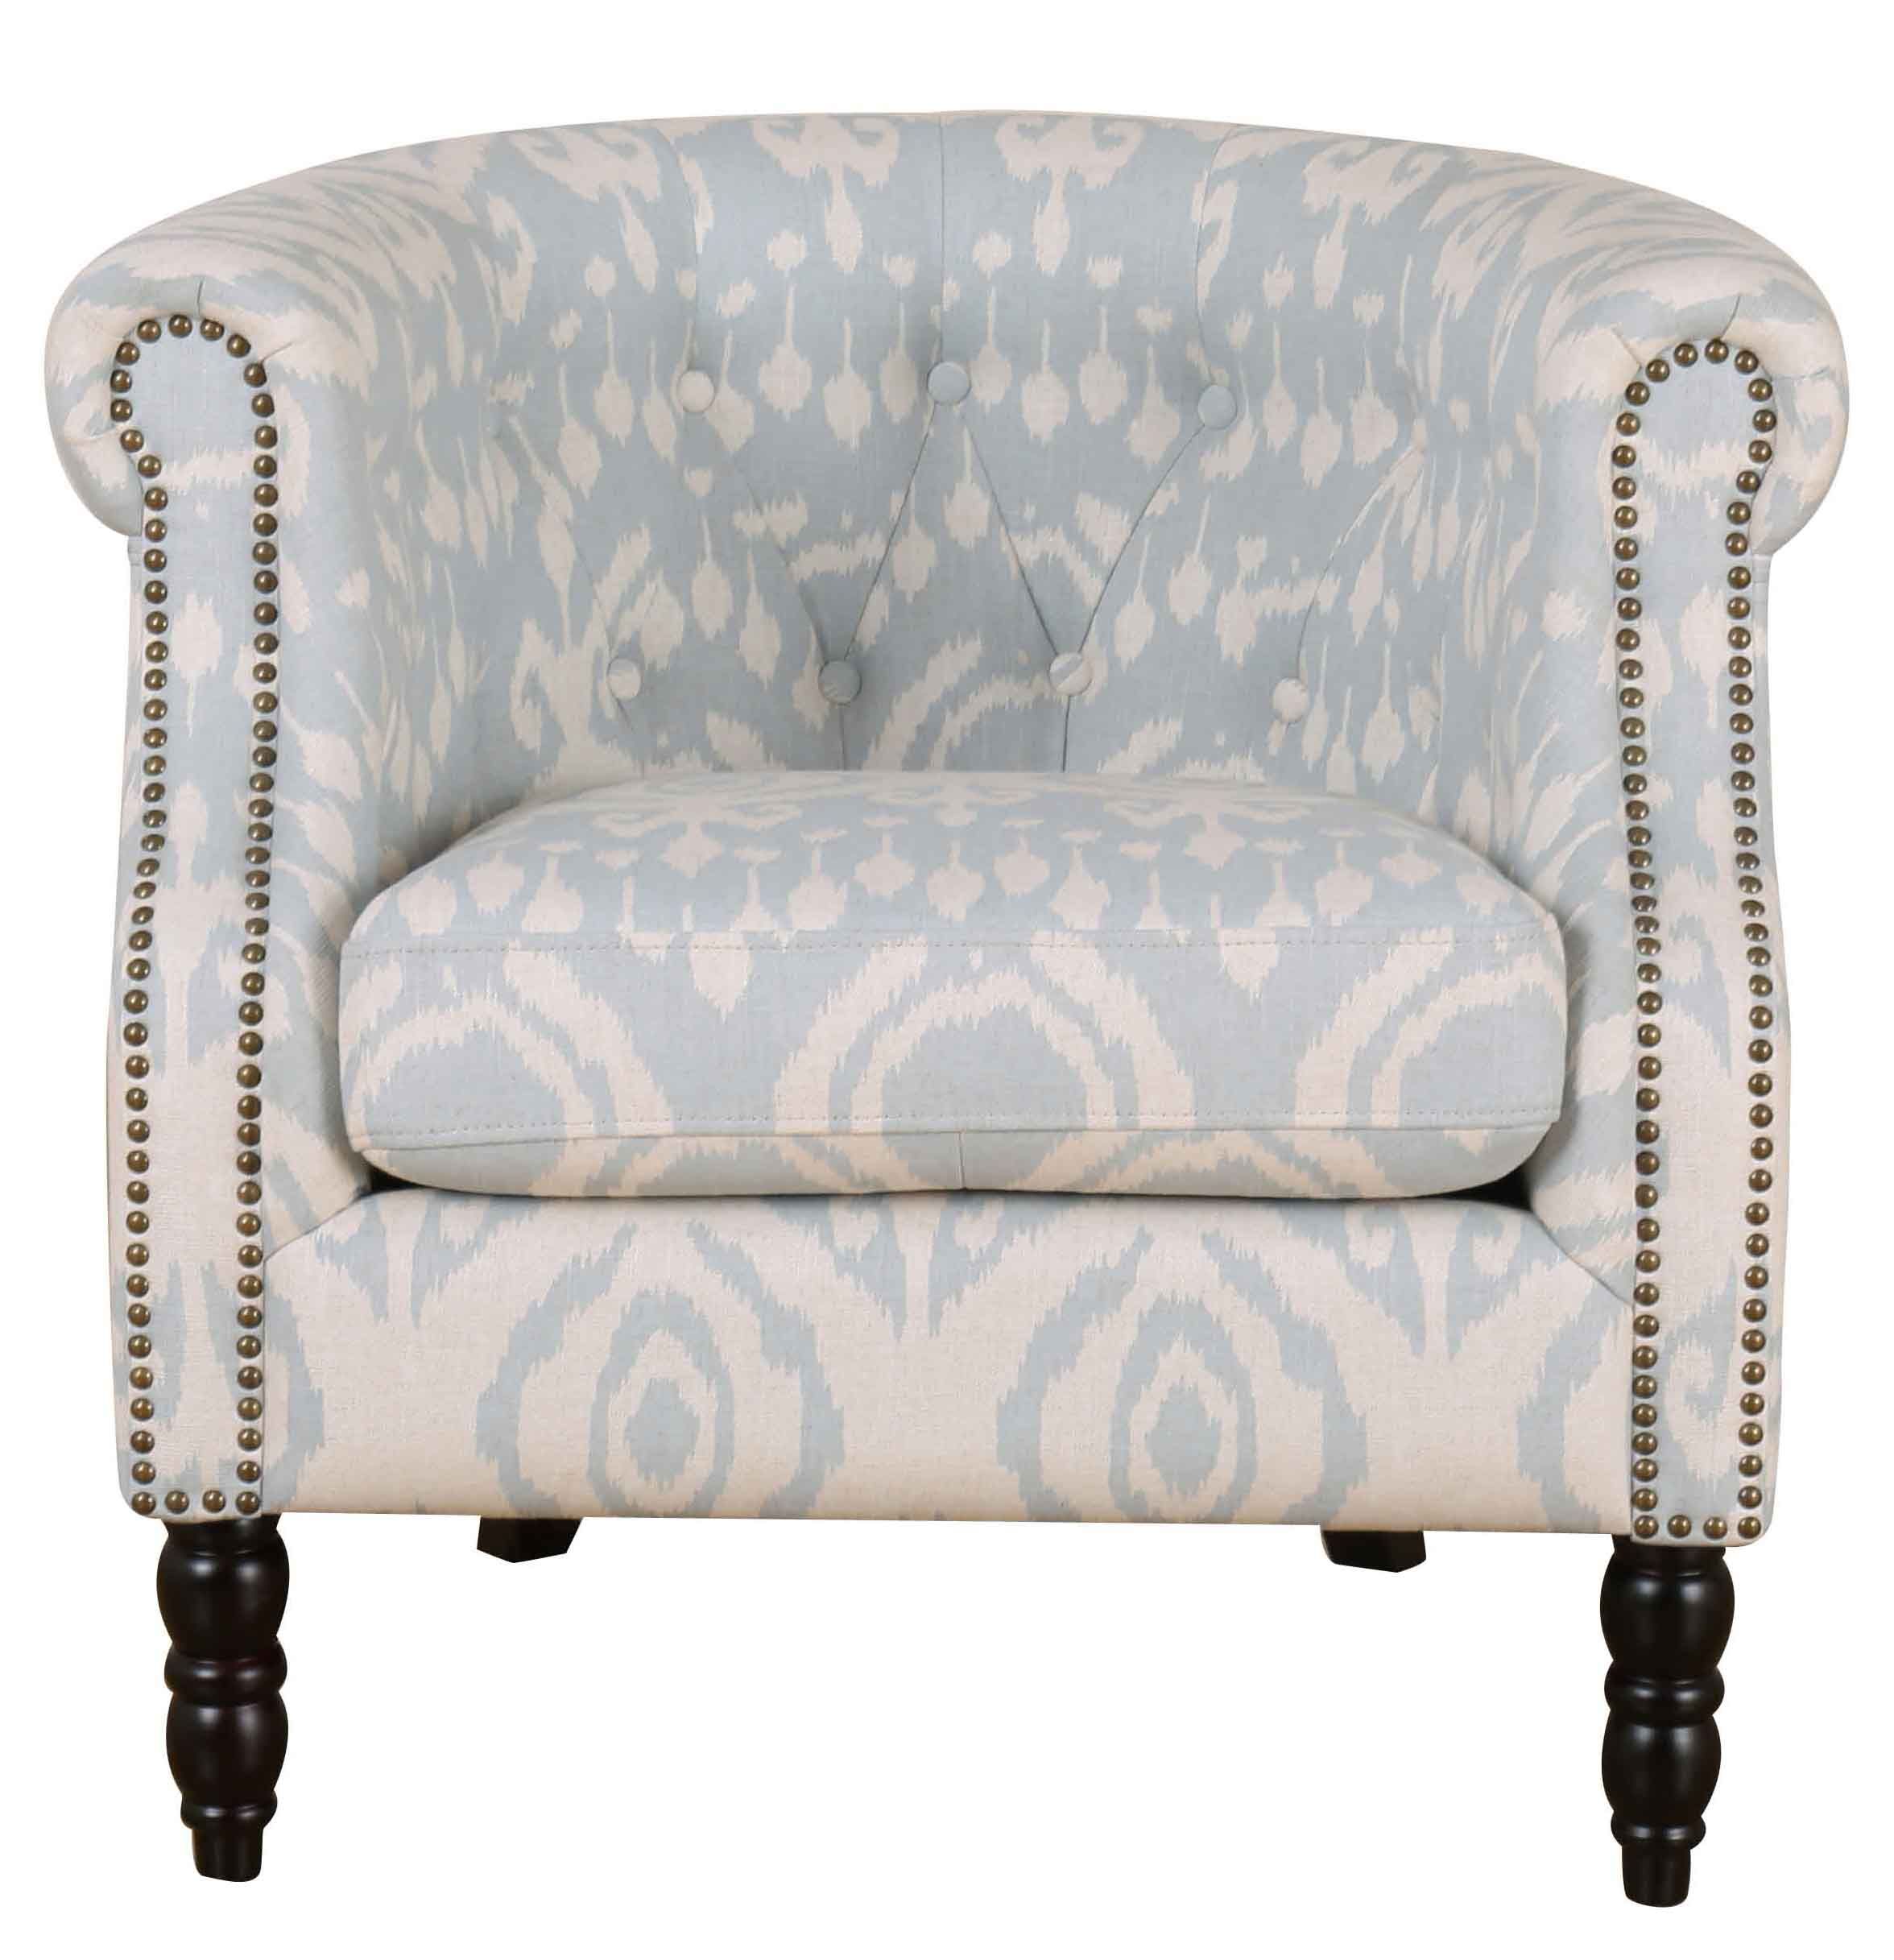 Cosette Chairandrew Martin Origin In Armchairs Regarding Cosette Leather Sofa Chairs (Photo 17 of 25)